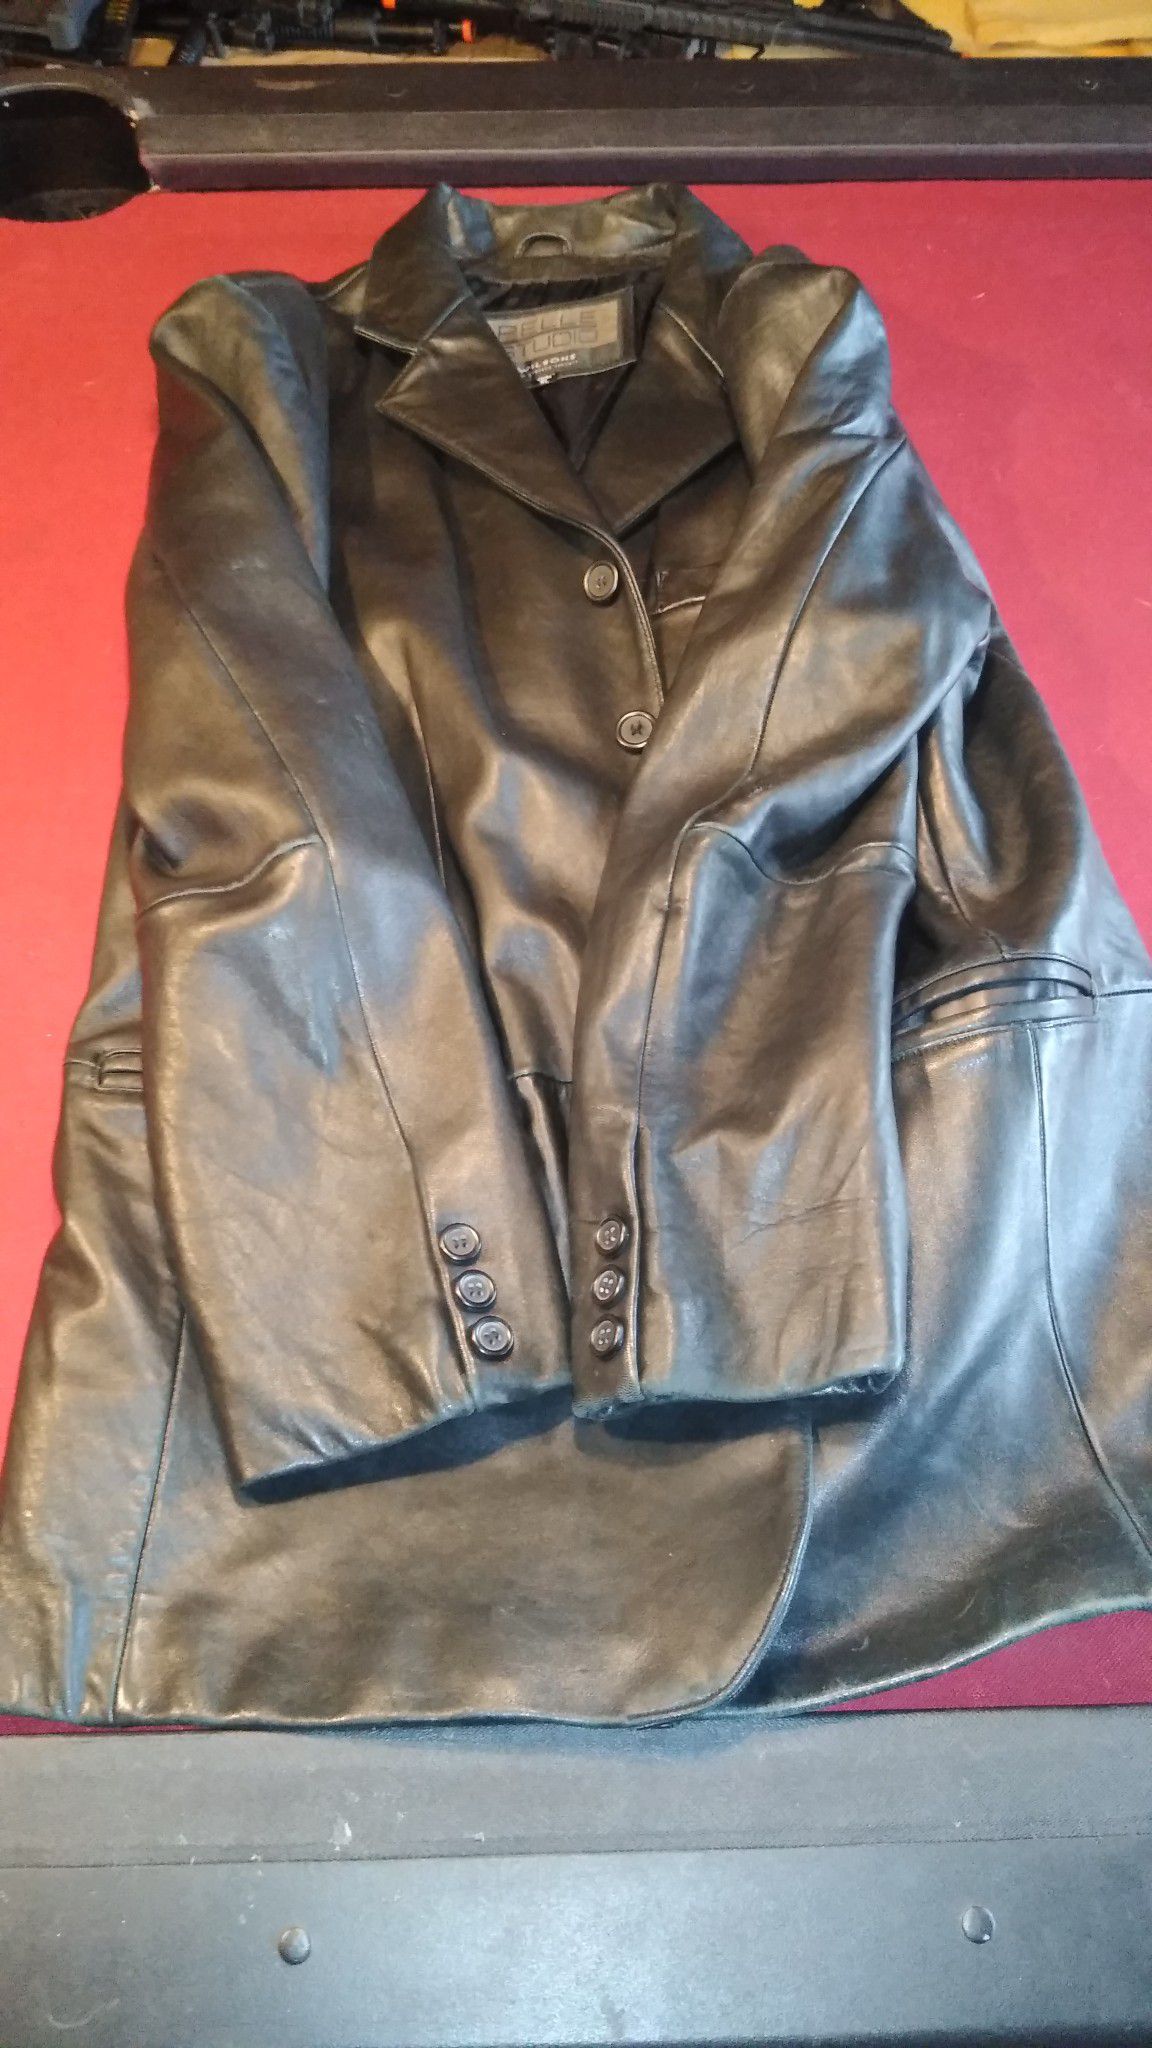 Brand new leather blazer